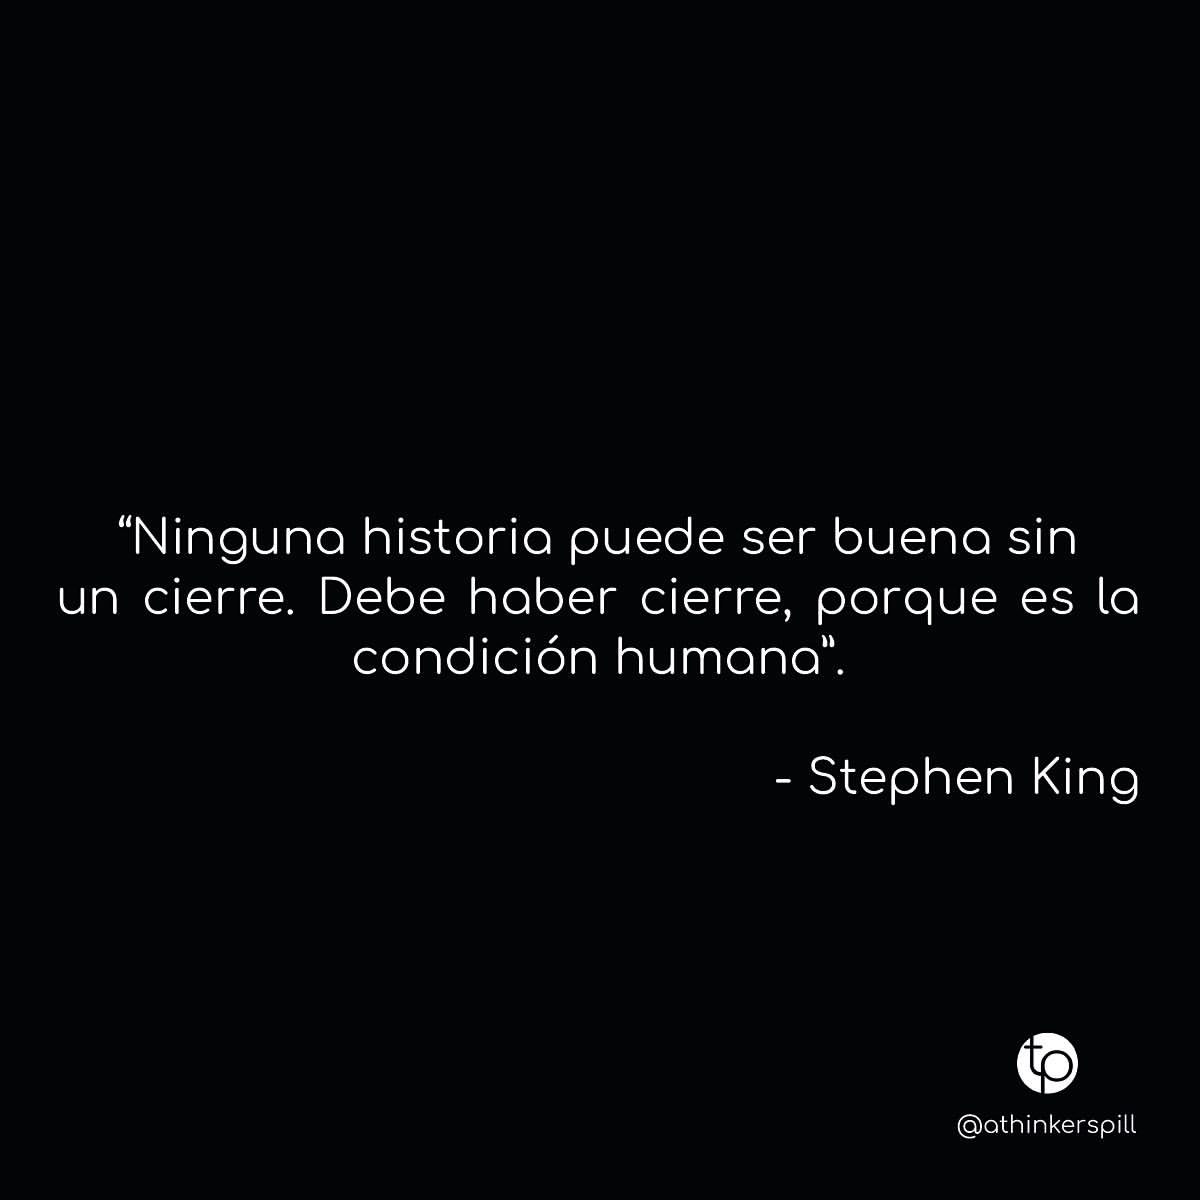 "Ninguna historia puede ser buena sin un cierre. Debe haber cierre, porque es la condición humana". Stephen King.